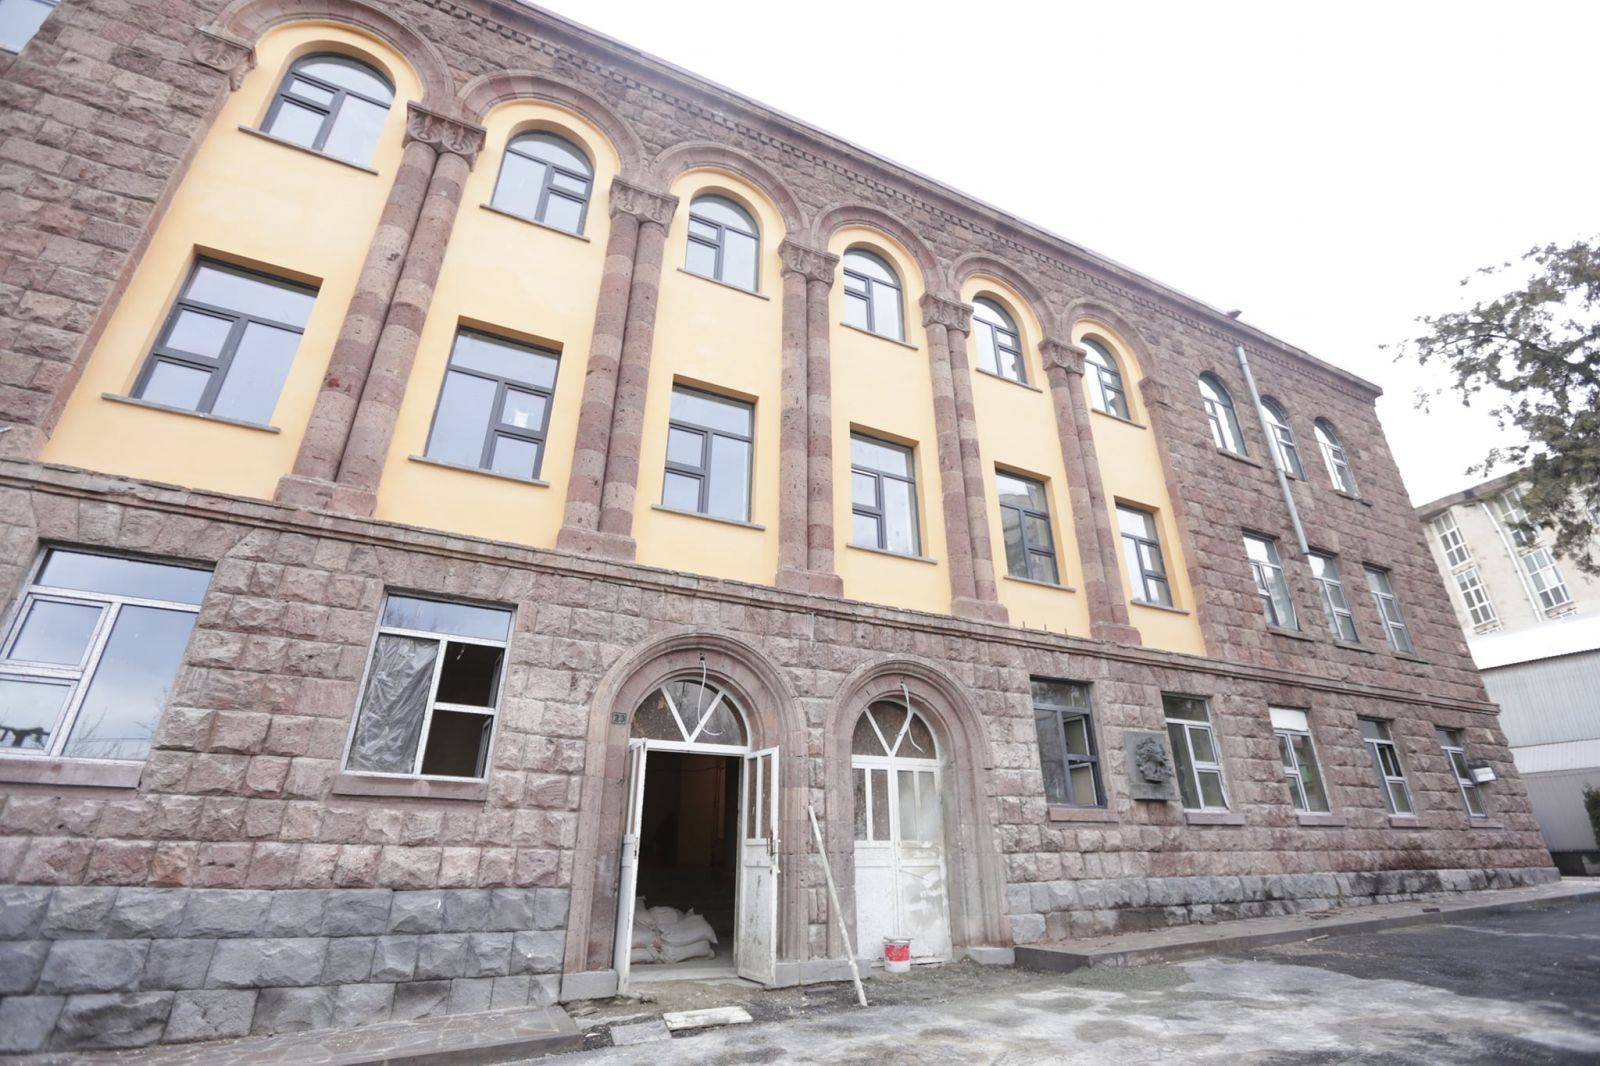 Վ․ Պետրոսյանի անվան դպրոցի՝ 1940-ական թթ․ կառուցված շենքն ամրացվում է սեյսմանվտանգության բարելավման ծրագրով. Պապիկյան